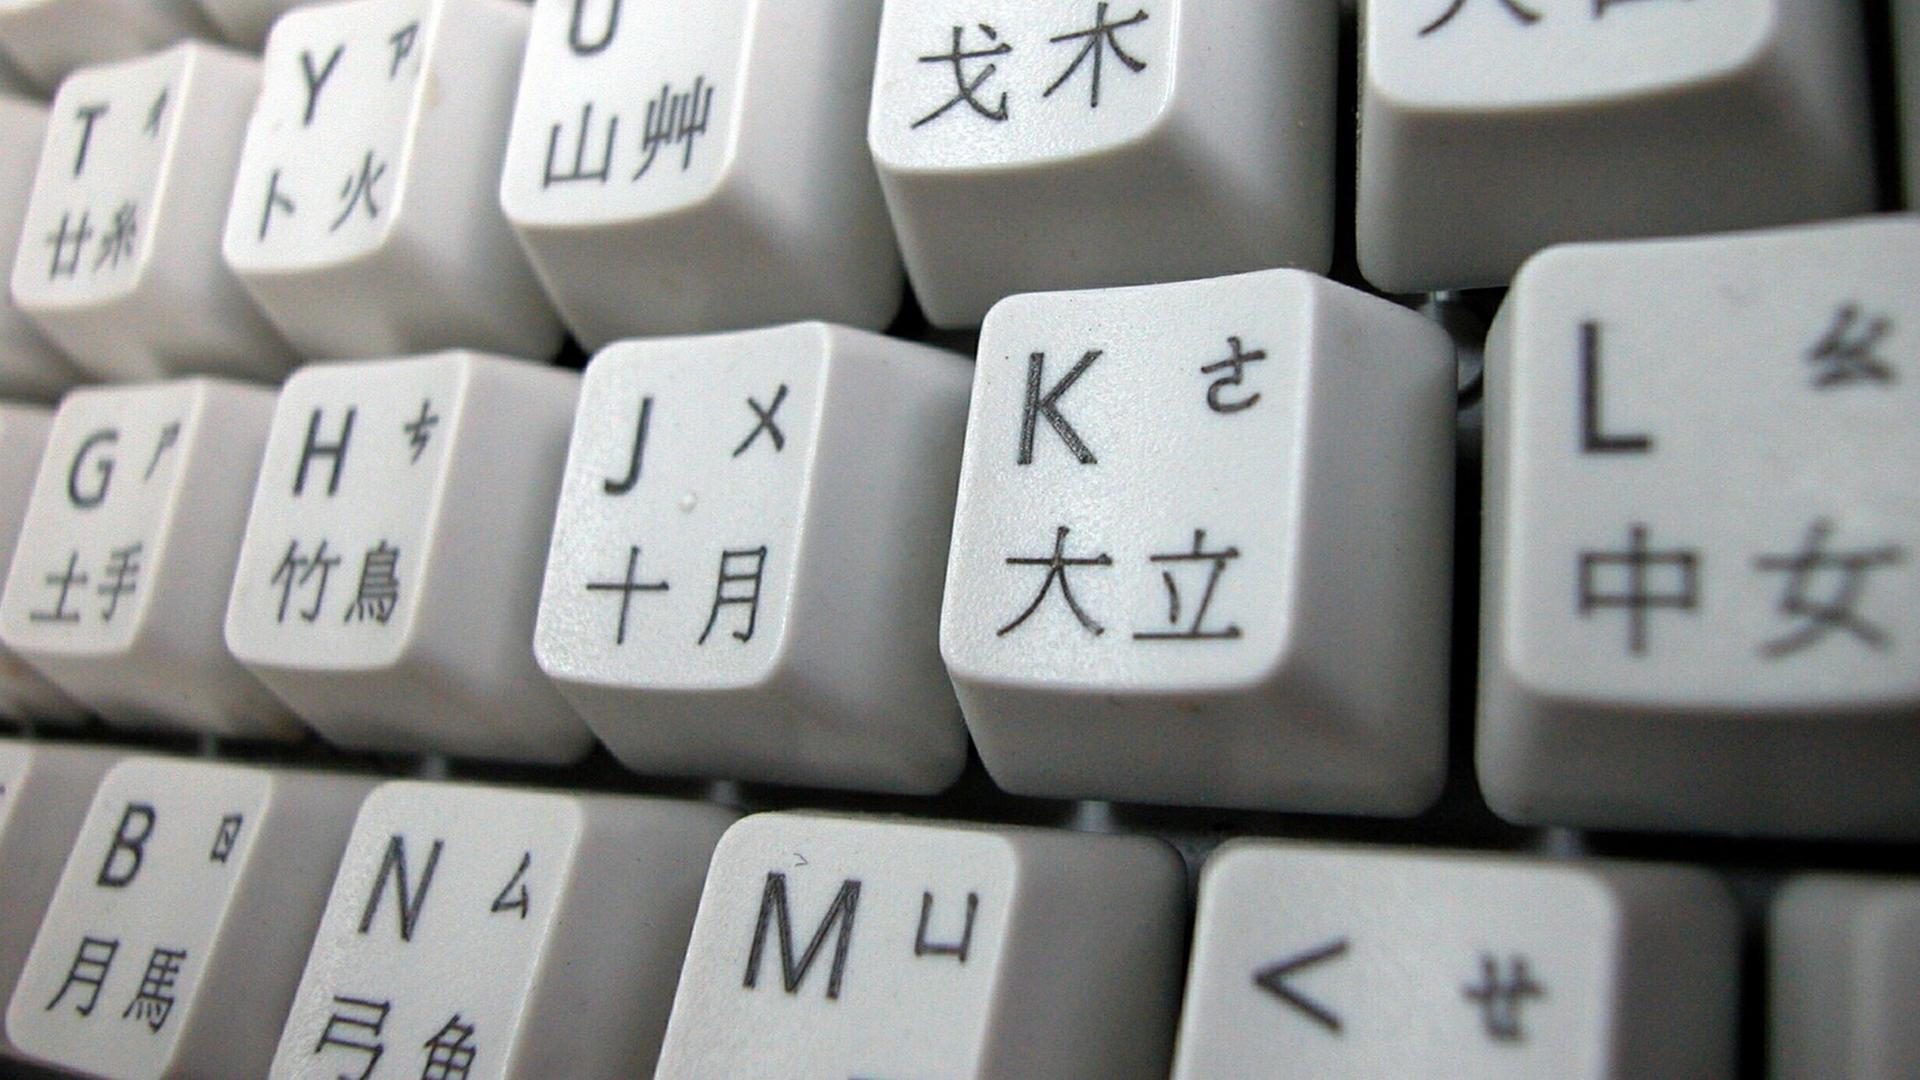 клавиатура у китайцев фото